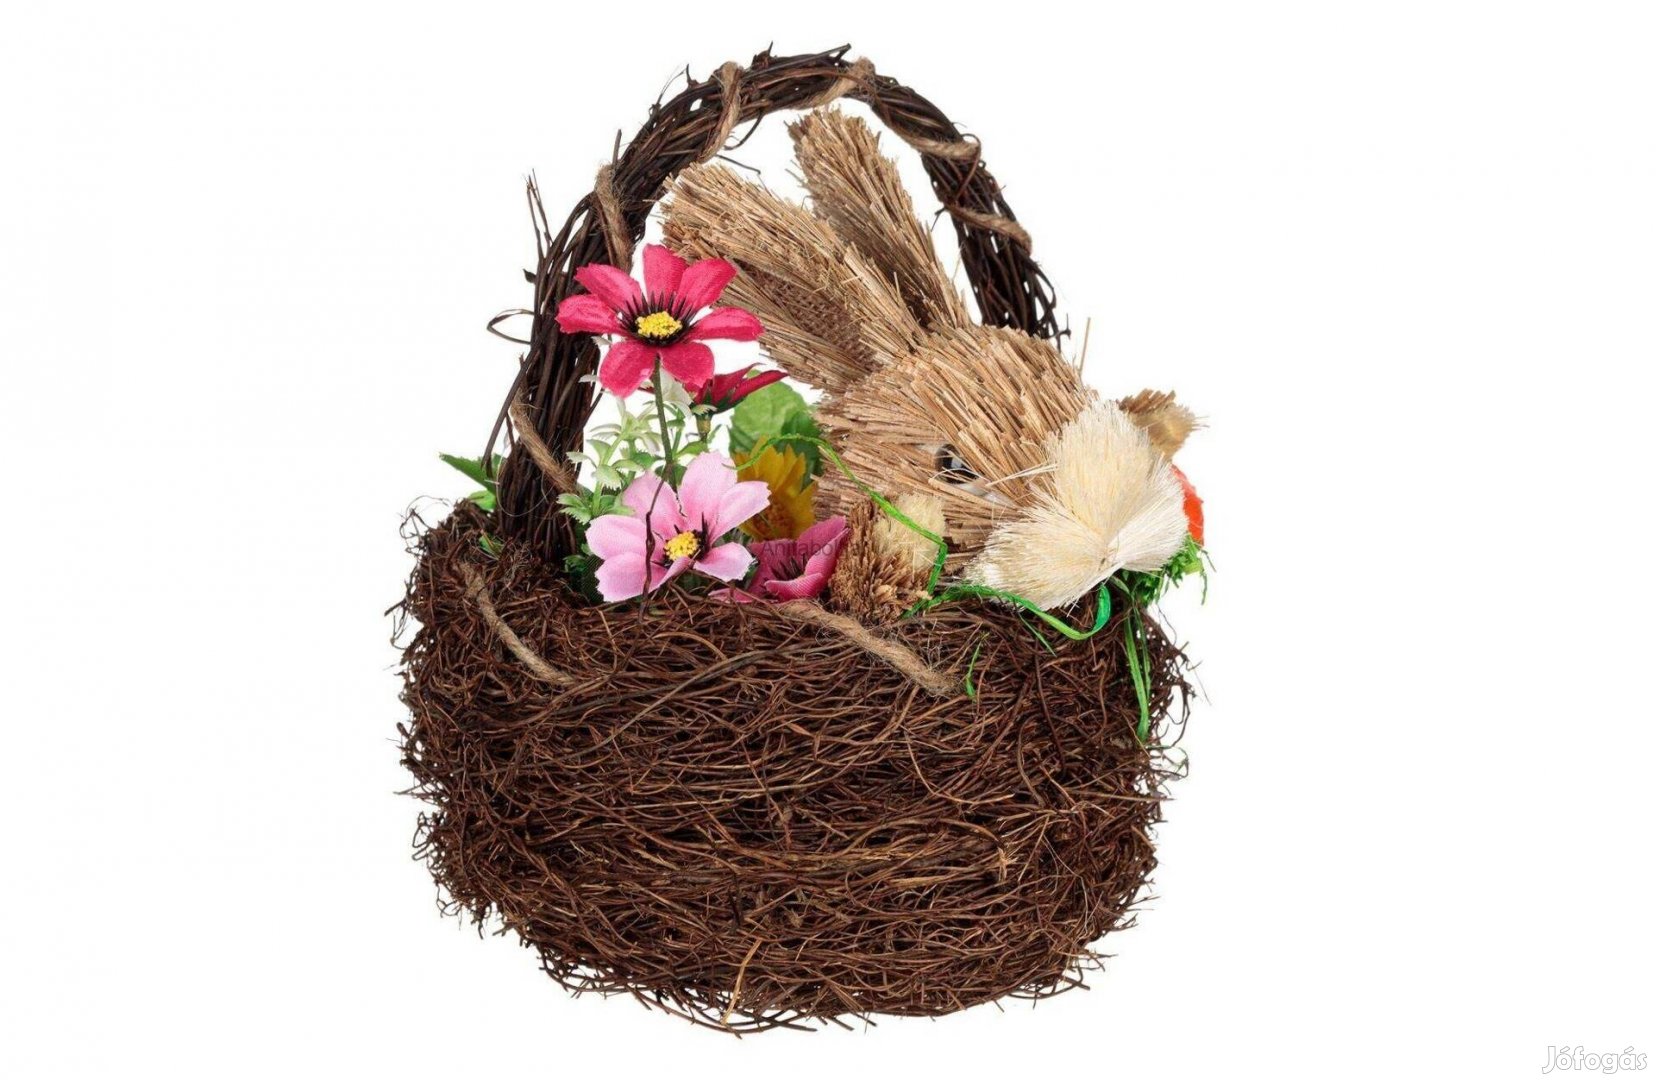 Természetes rost nyuszi kosárban - Húsvéti dekoráció 22 cm